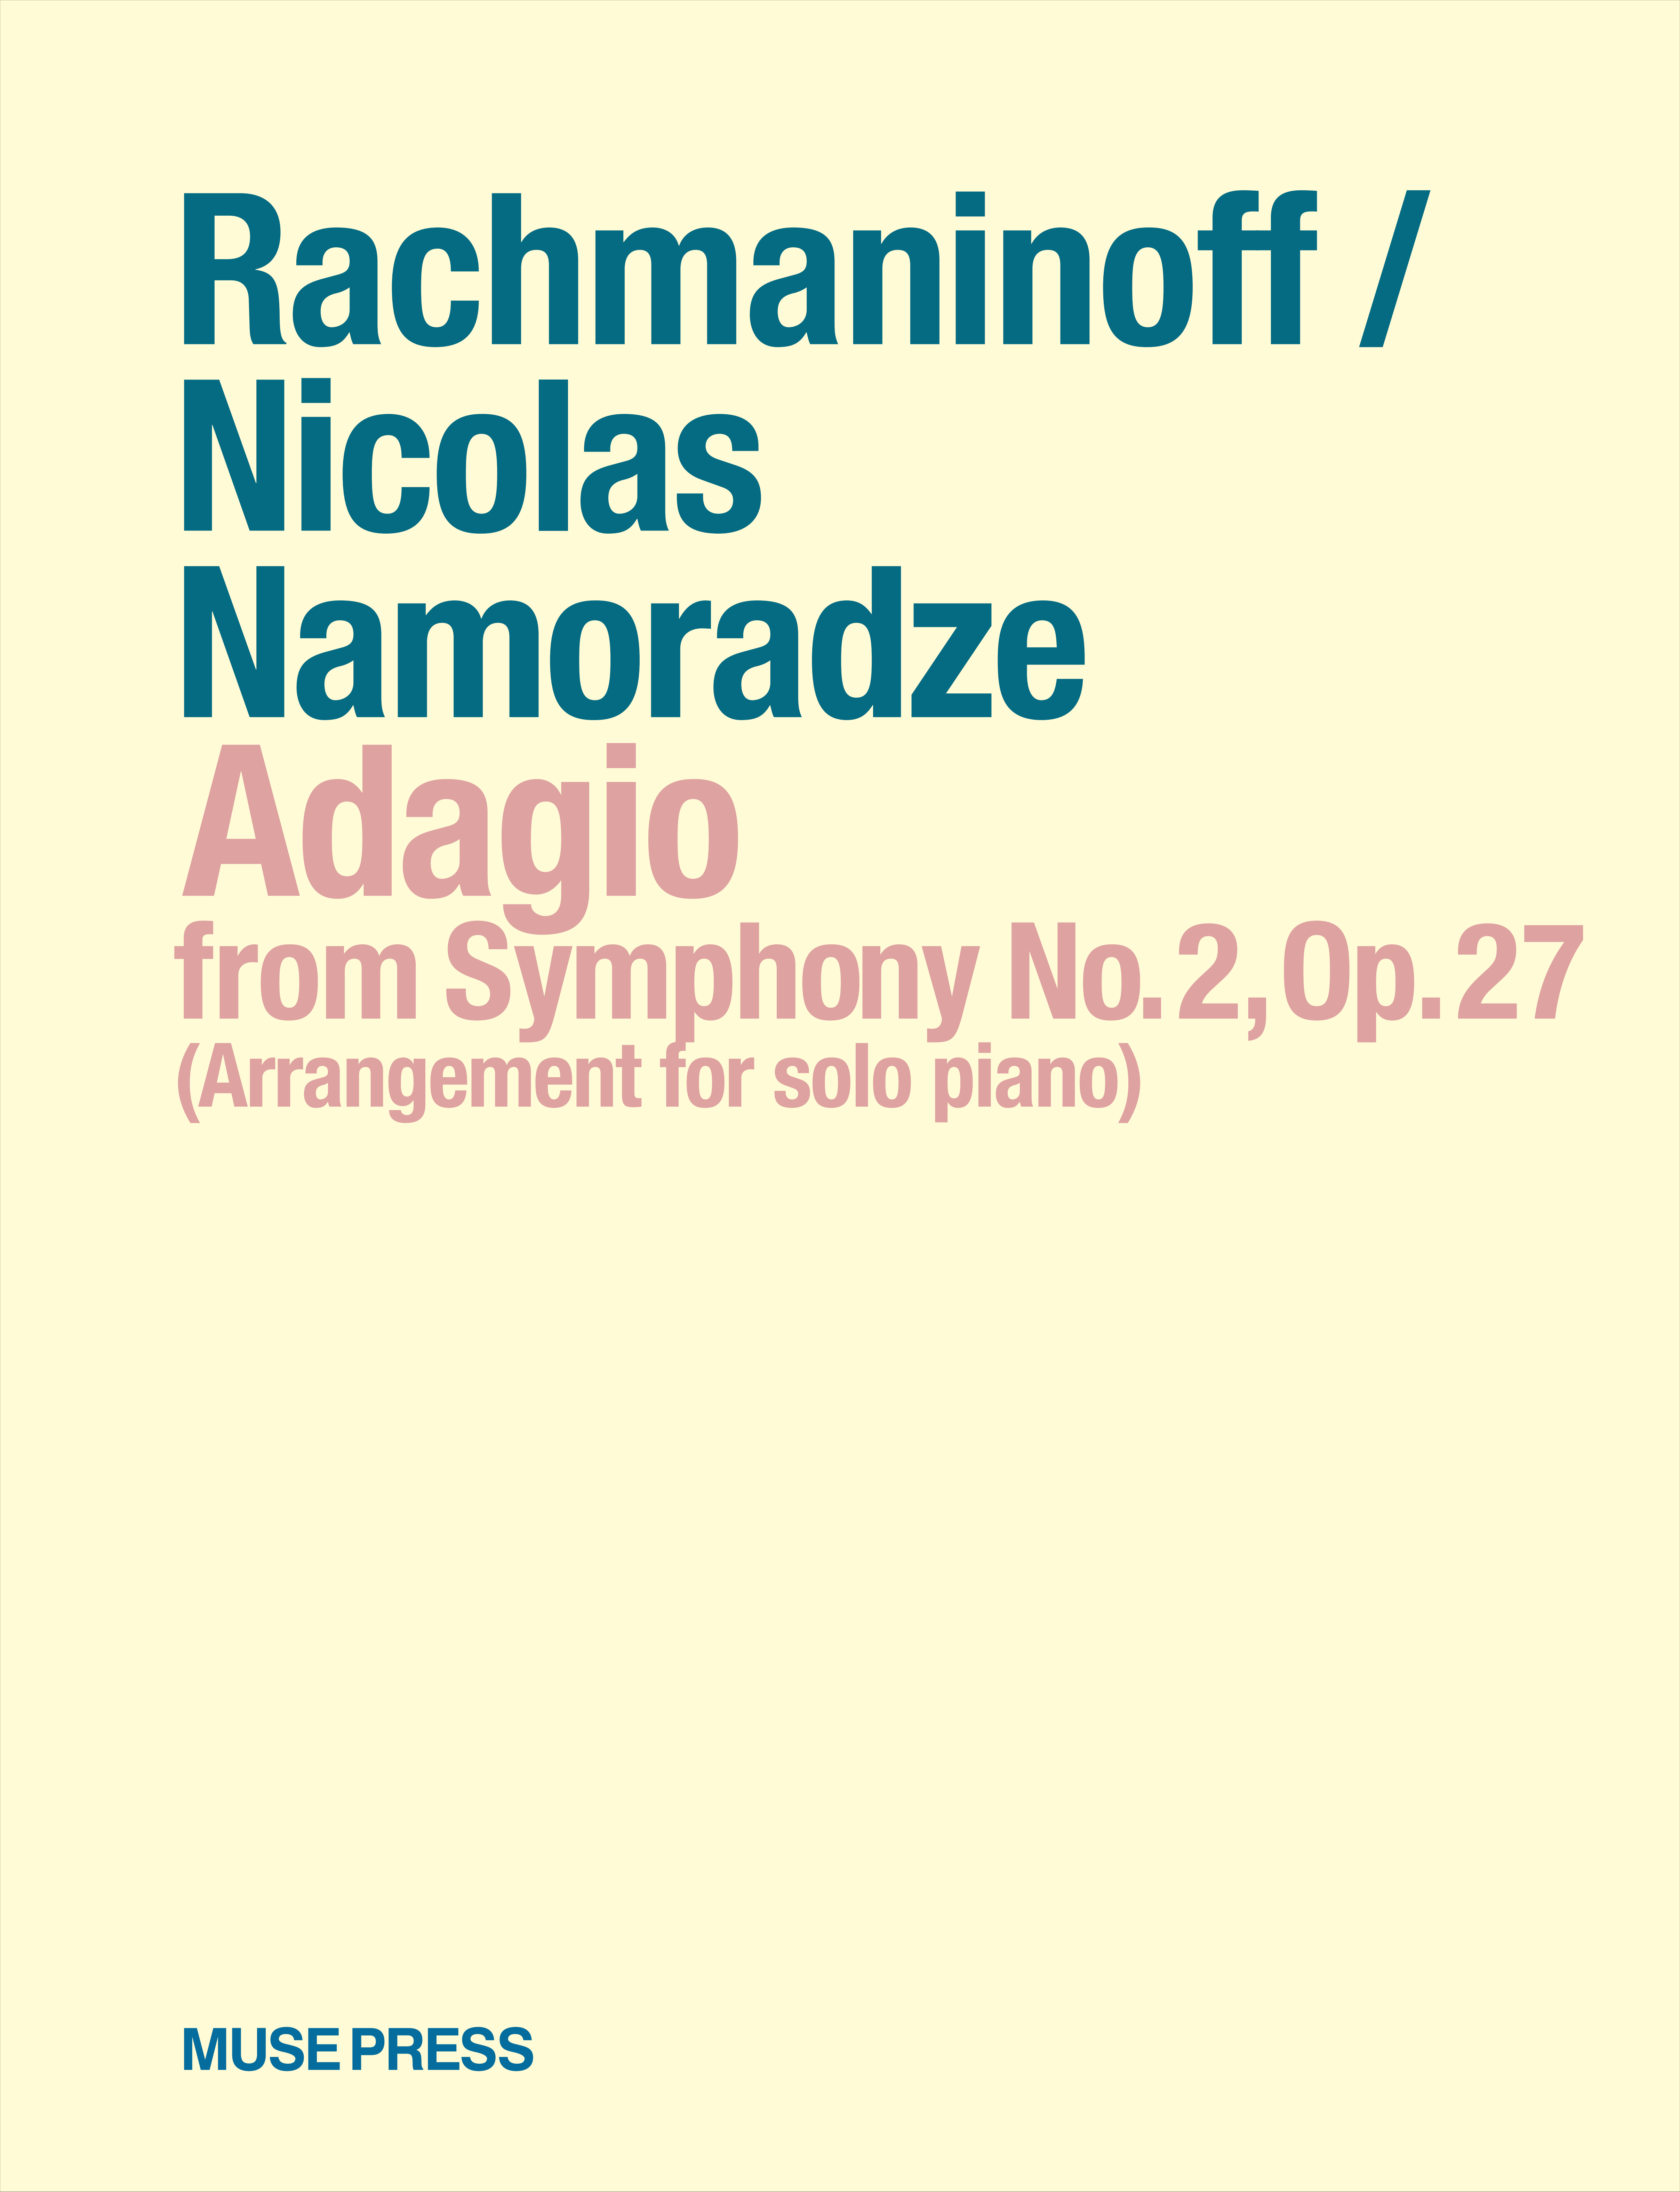 ラフマニノフ/ニコラス・ナモラーゼ：アダージョ（交響曲第2番 作品27より）ピアノ独奏版